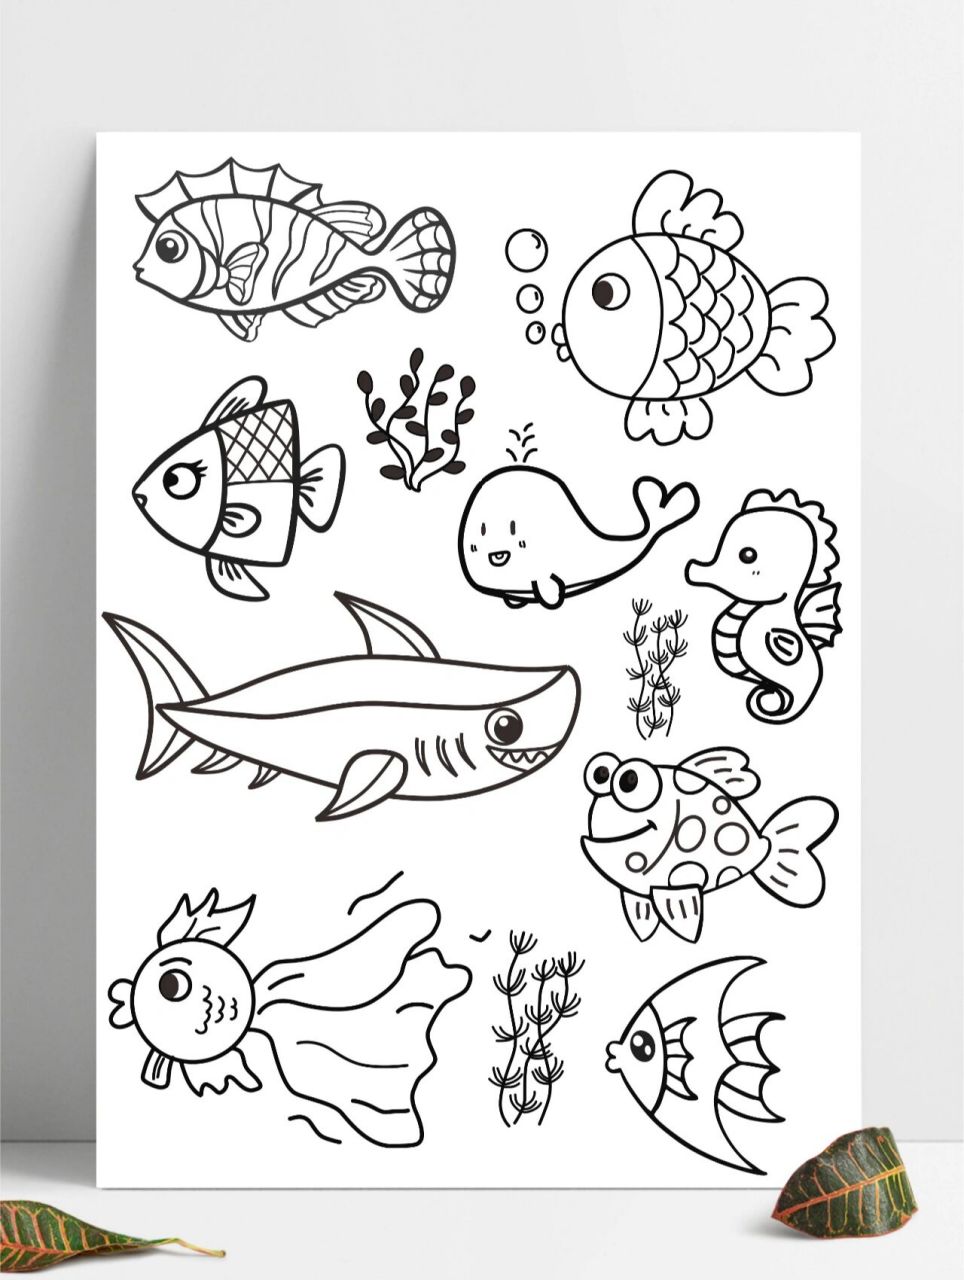 水里游的动物简笔画图片